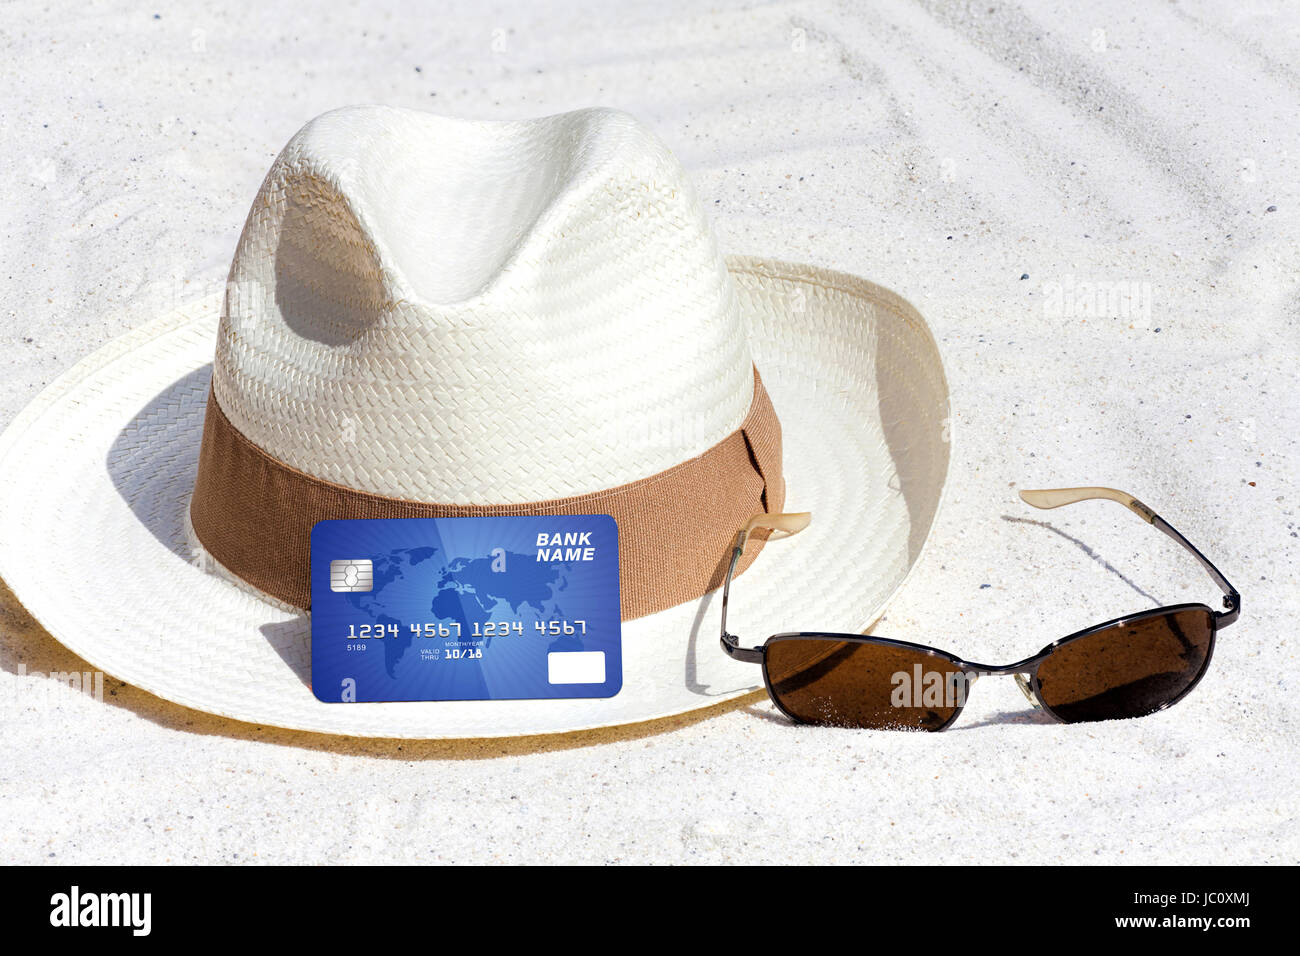 Im Urlaub bargeldlos mit Kreditkarte bezahlen Stock Photo